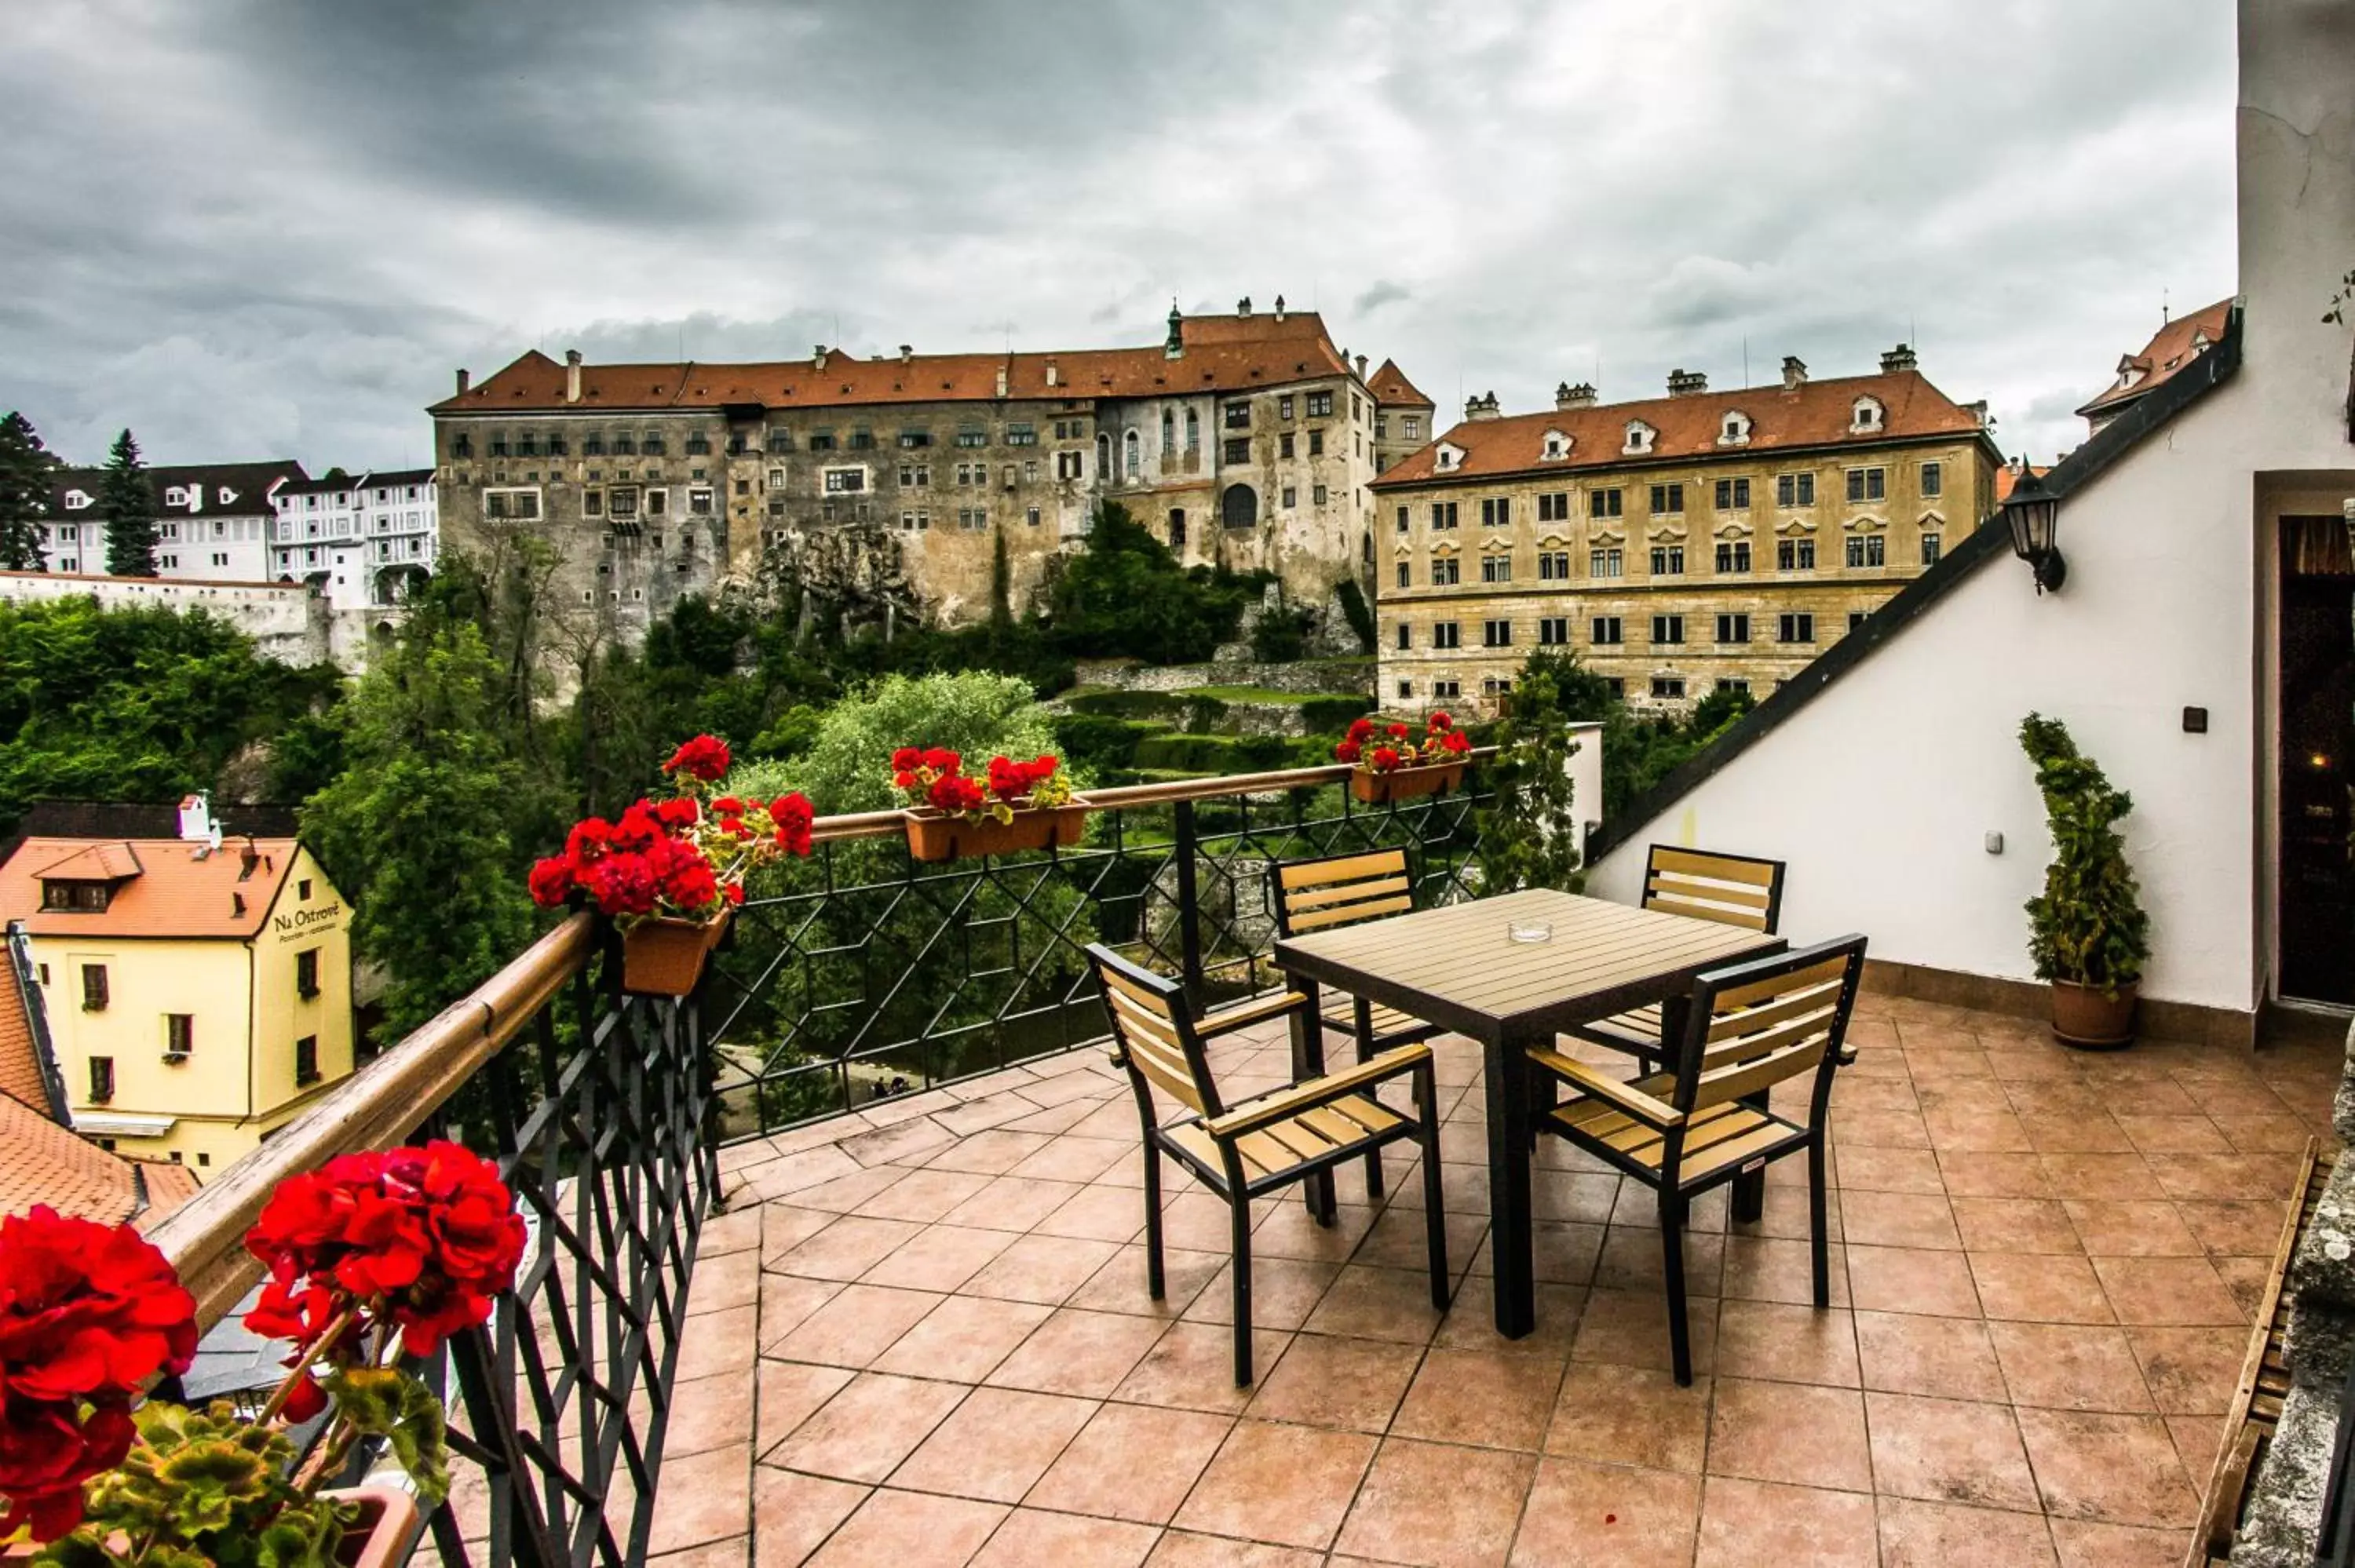 Balcony/Terrace in Hotel Dvorak Cesky Krumlov